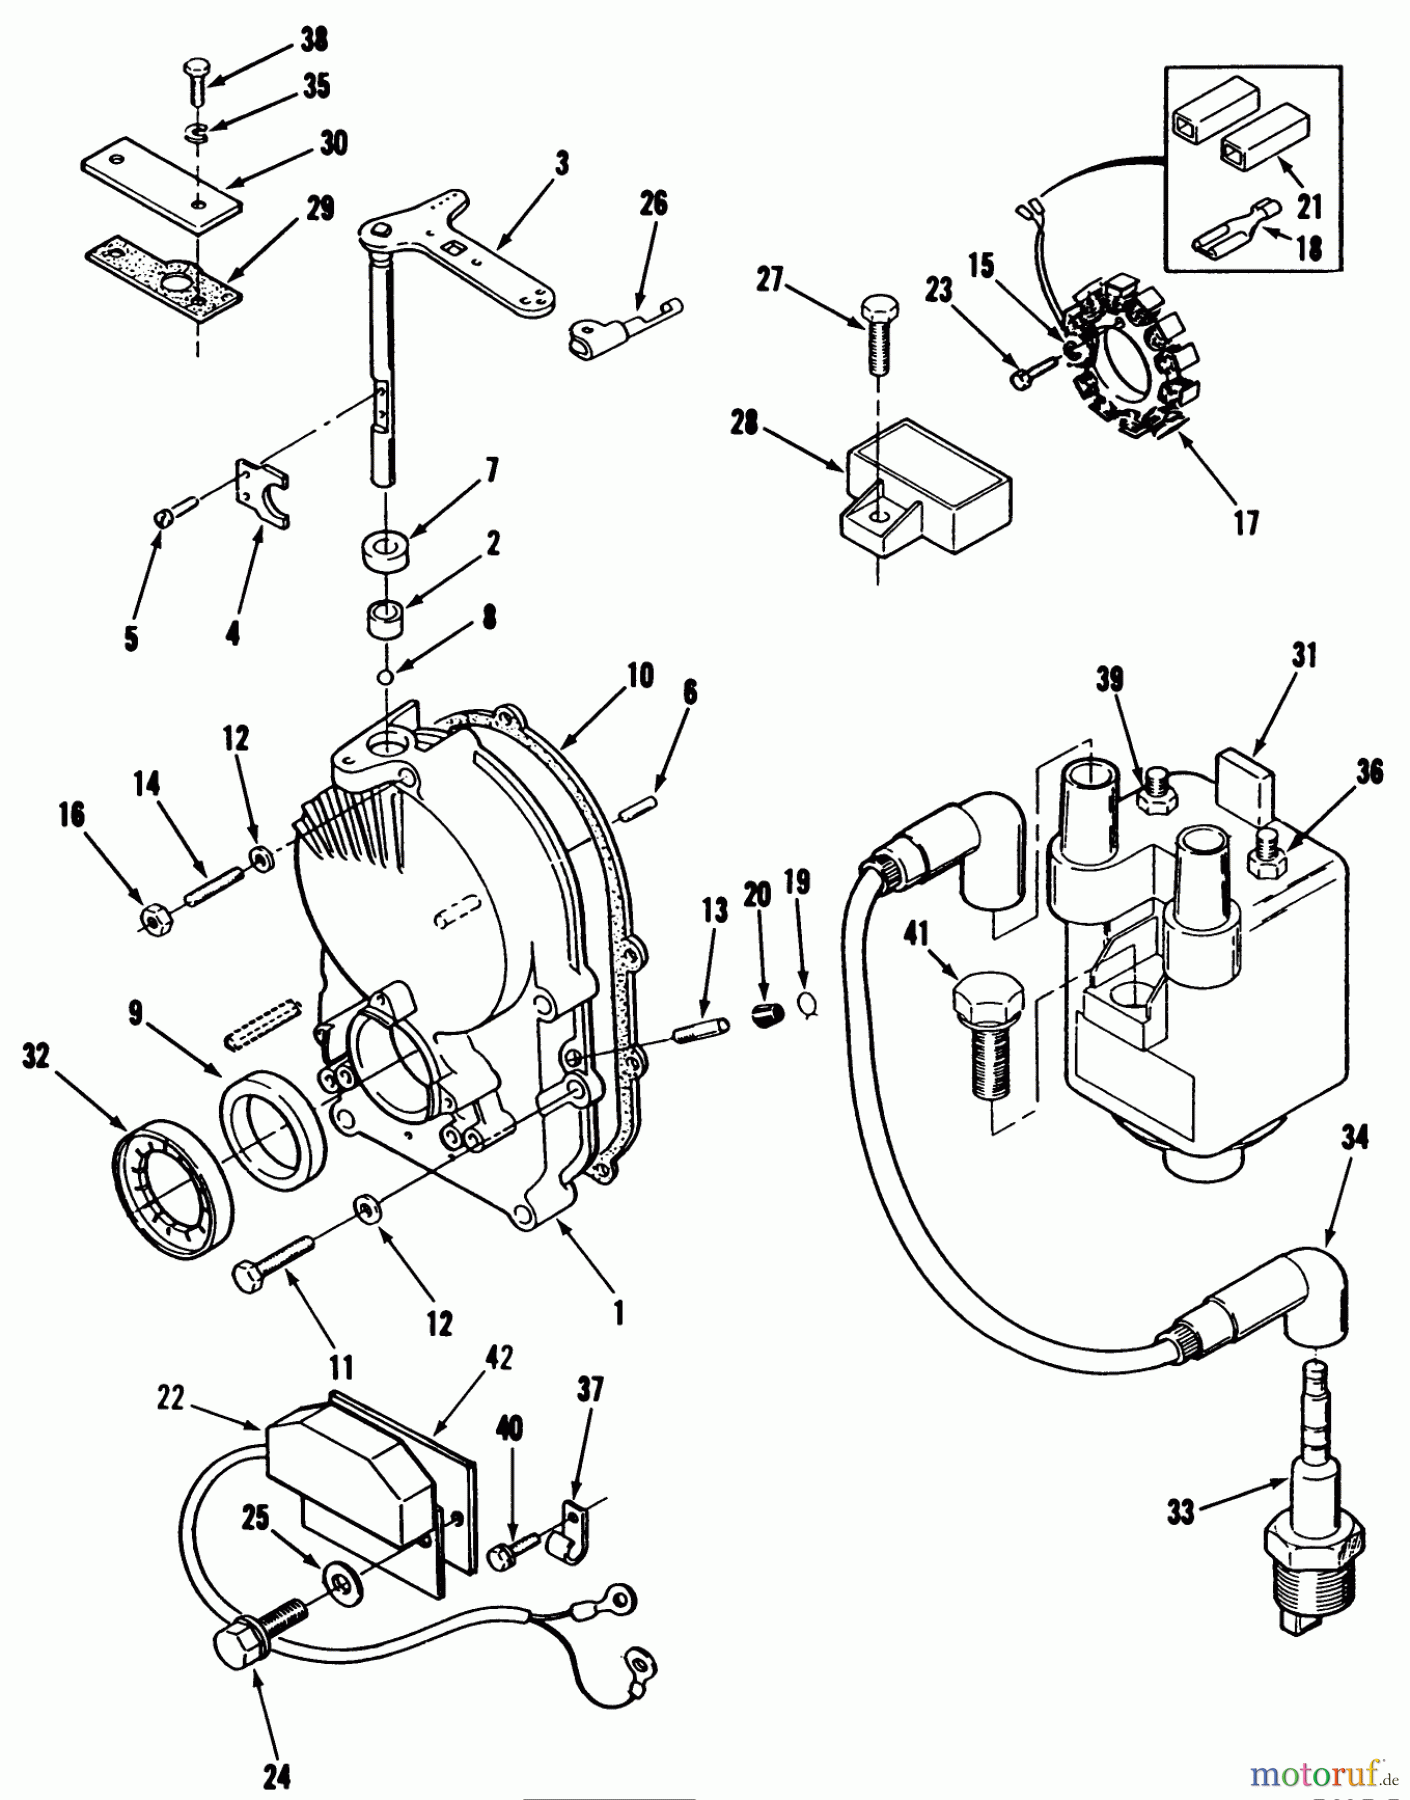  Toro Neu Mowers, Lawn & Garden Tractor Seite 1 31-16O803 (416-8) - Toro 416-8 Garden Tractor, 1991 (1000001-1999999) GEARCASE AND IGNITION CONTROLS